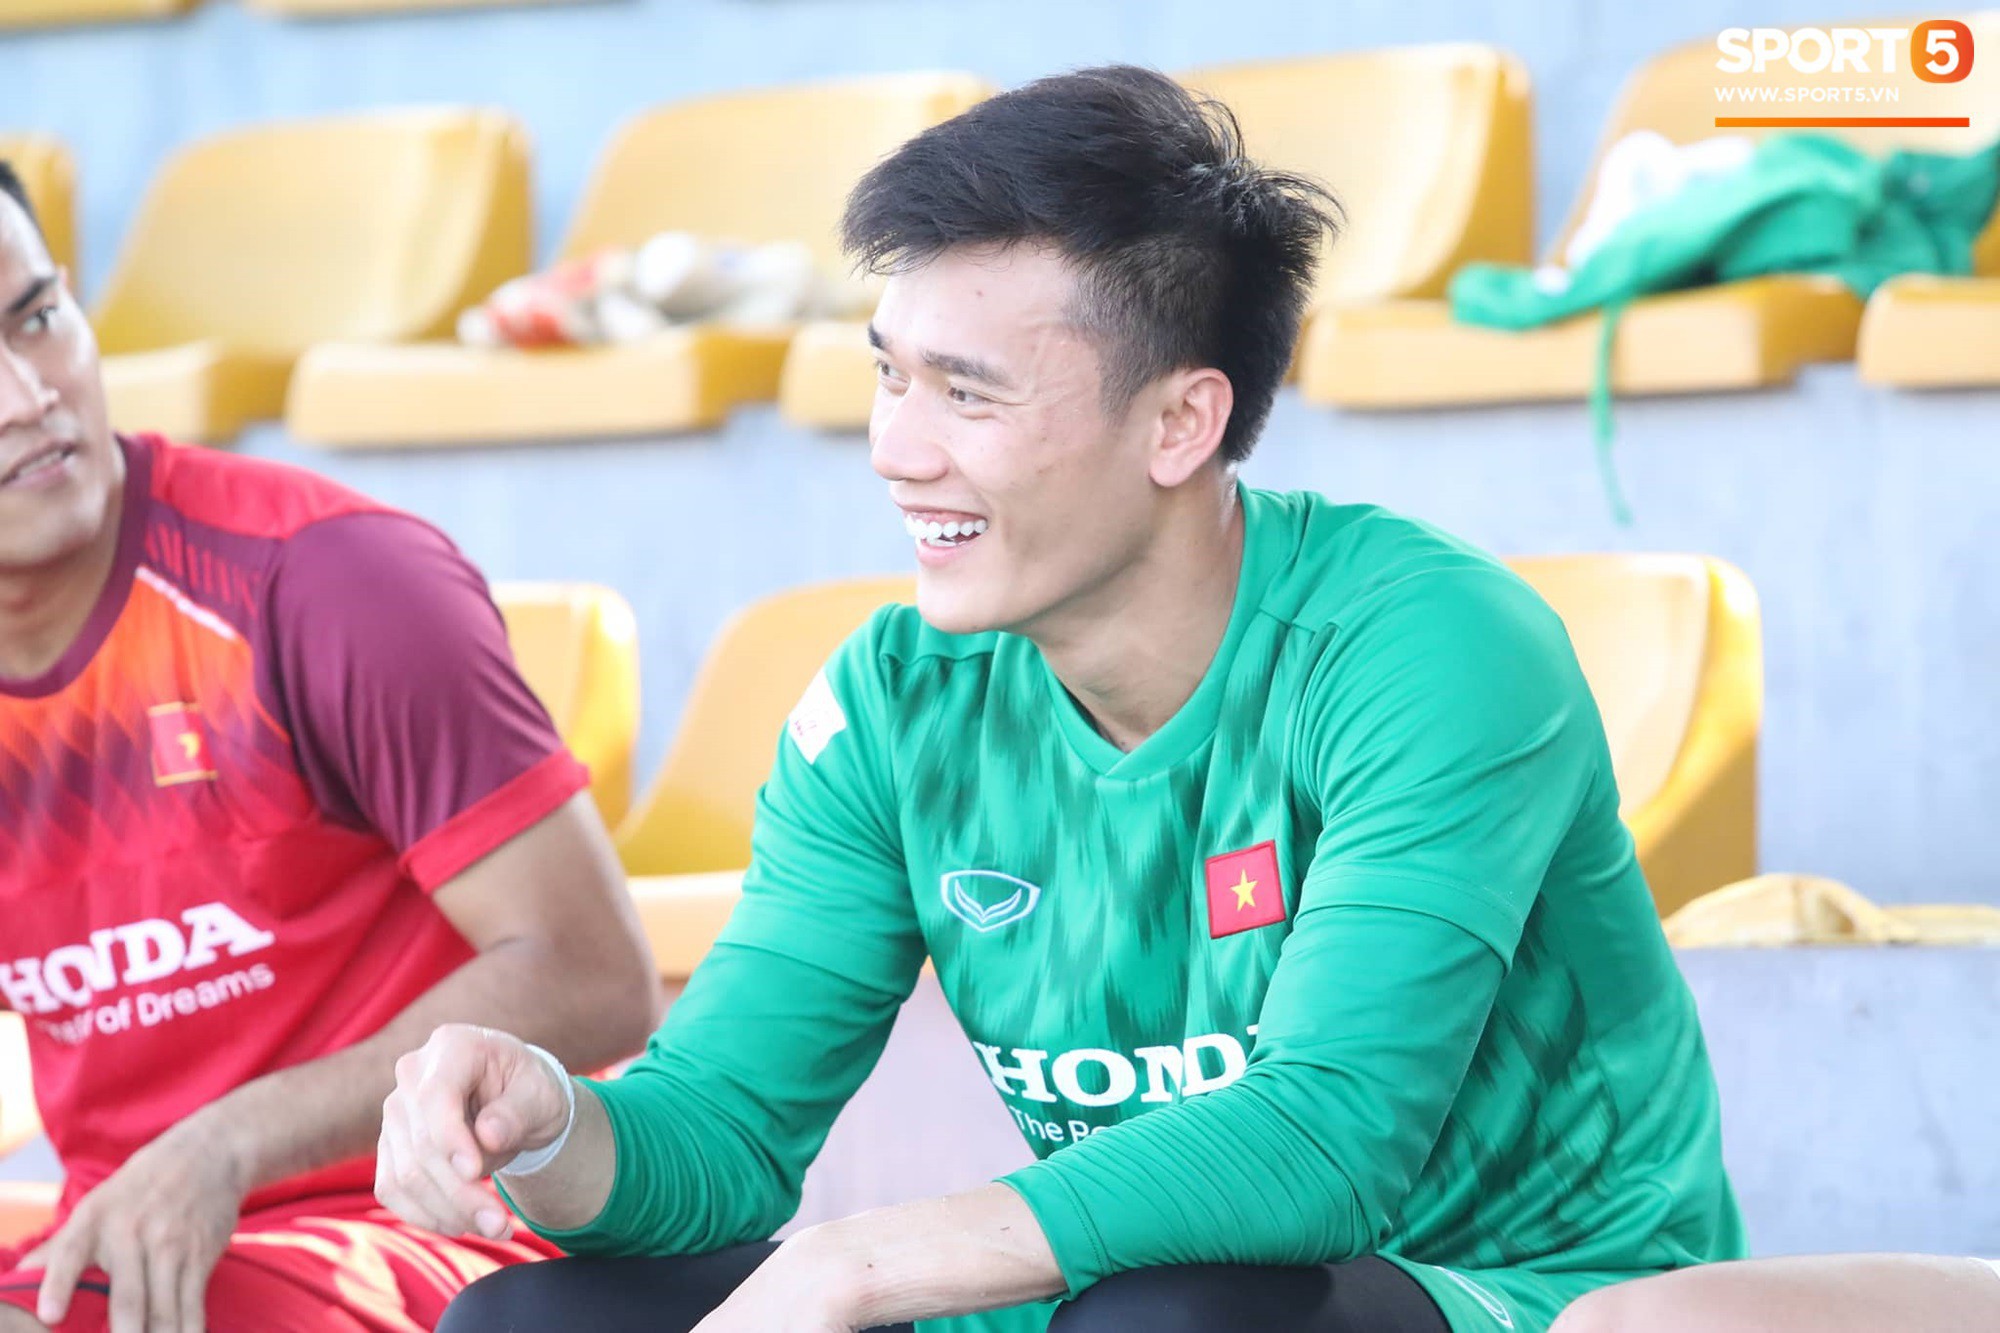 Bùi Tiến Dũng xuất hiện với cổ tay băng bó, trầm tư làm khán giả trong trận đấu tập của U23 Việt Nam - Ảnh 3.